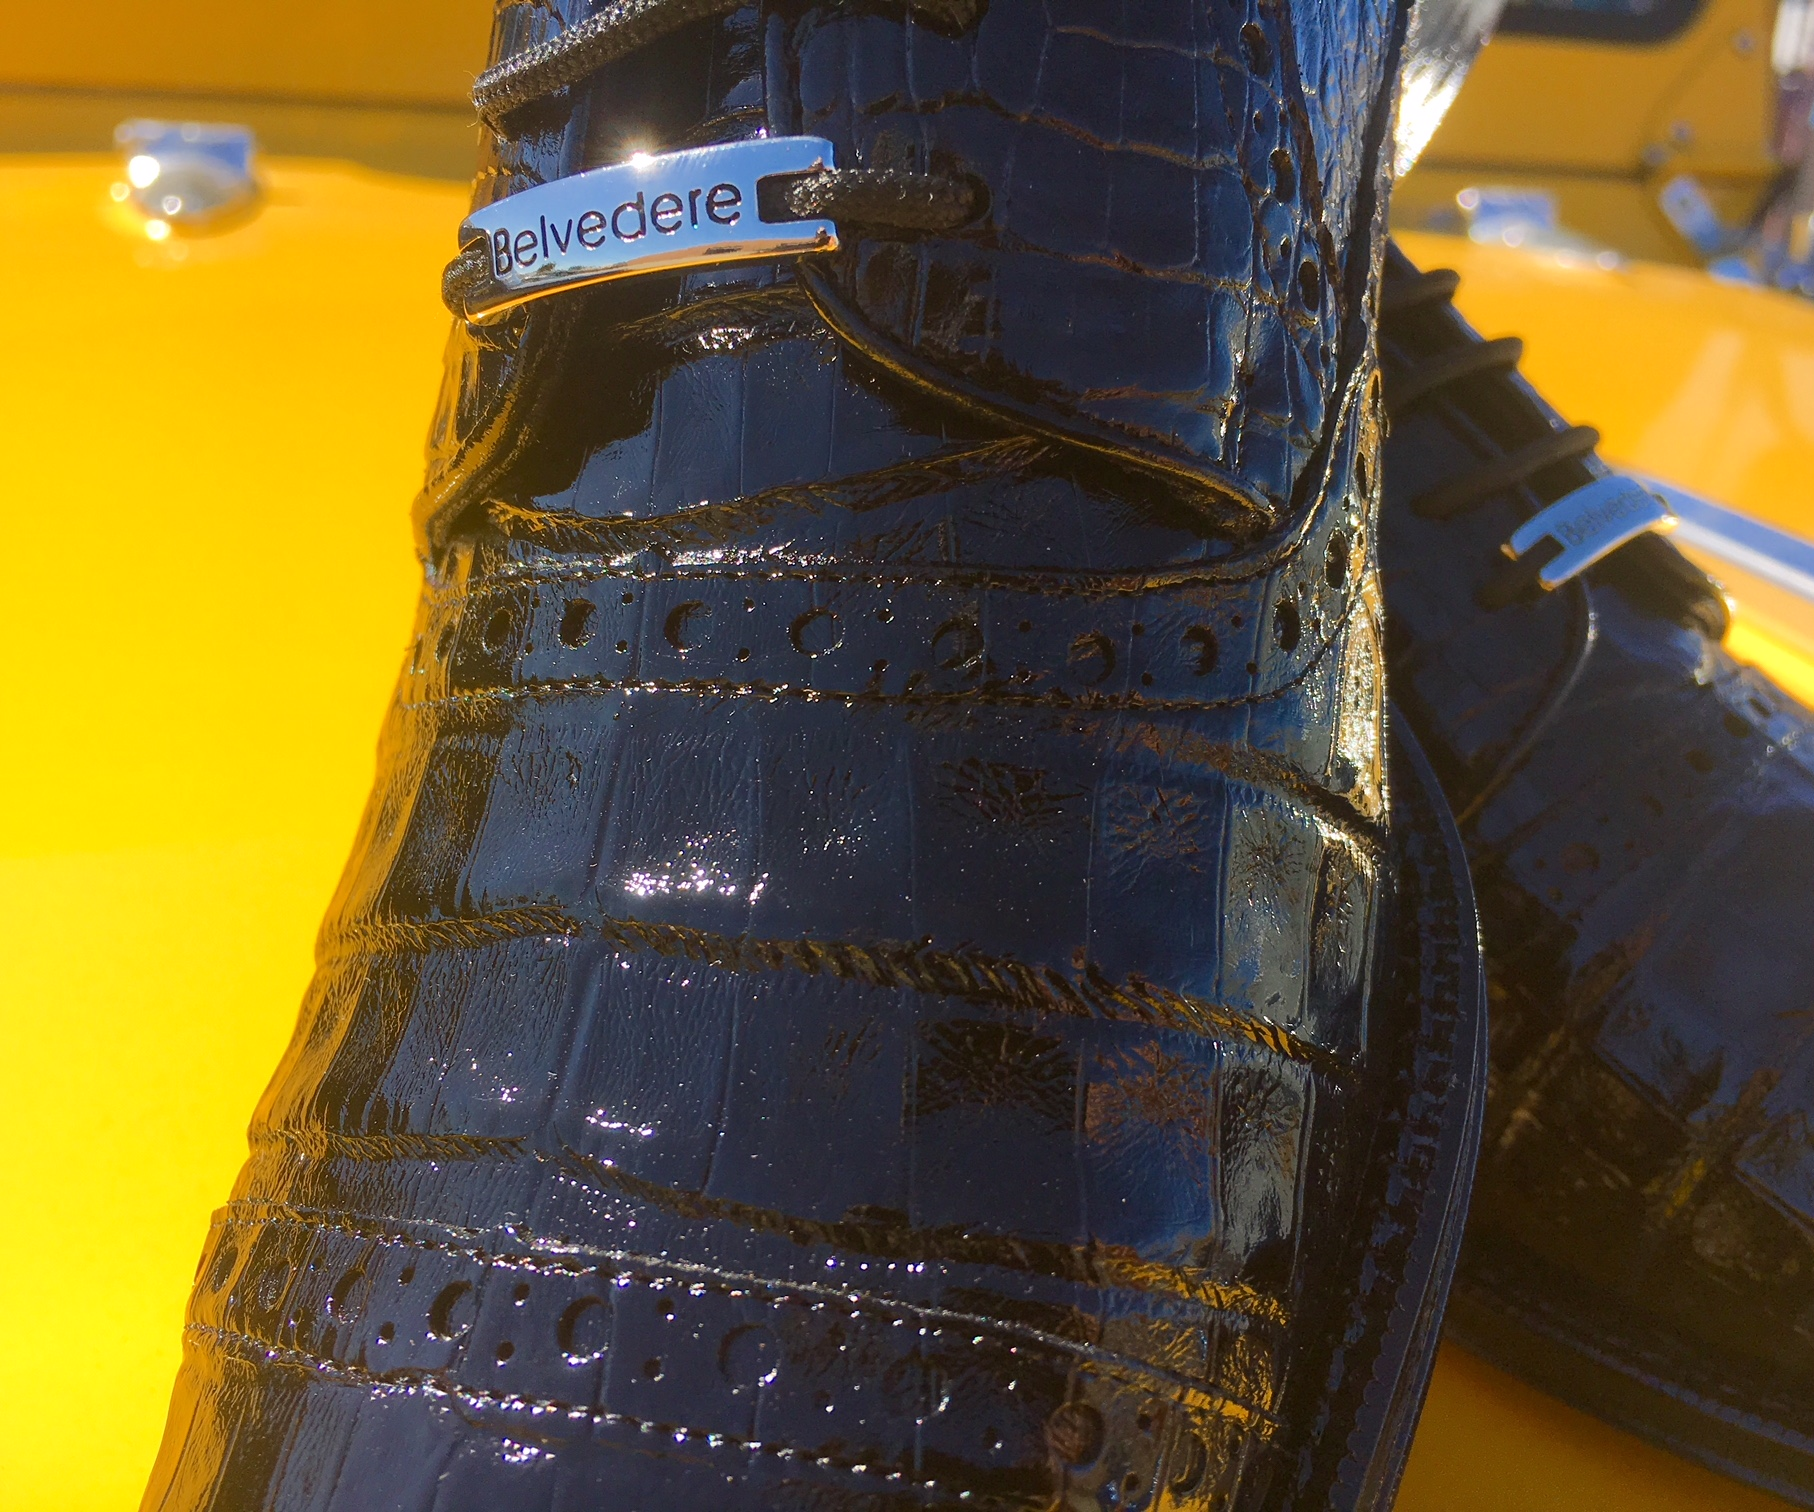 Croc Imprint Leather Shoes